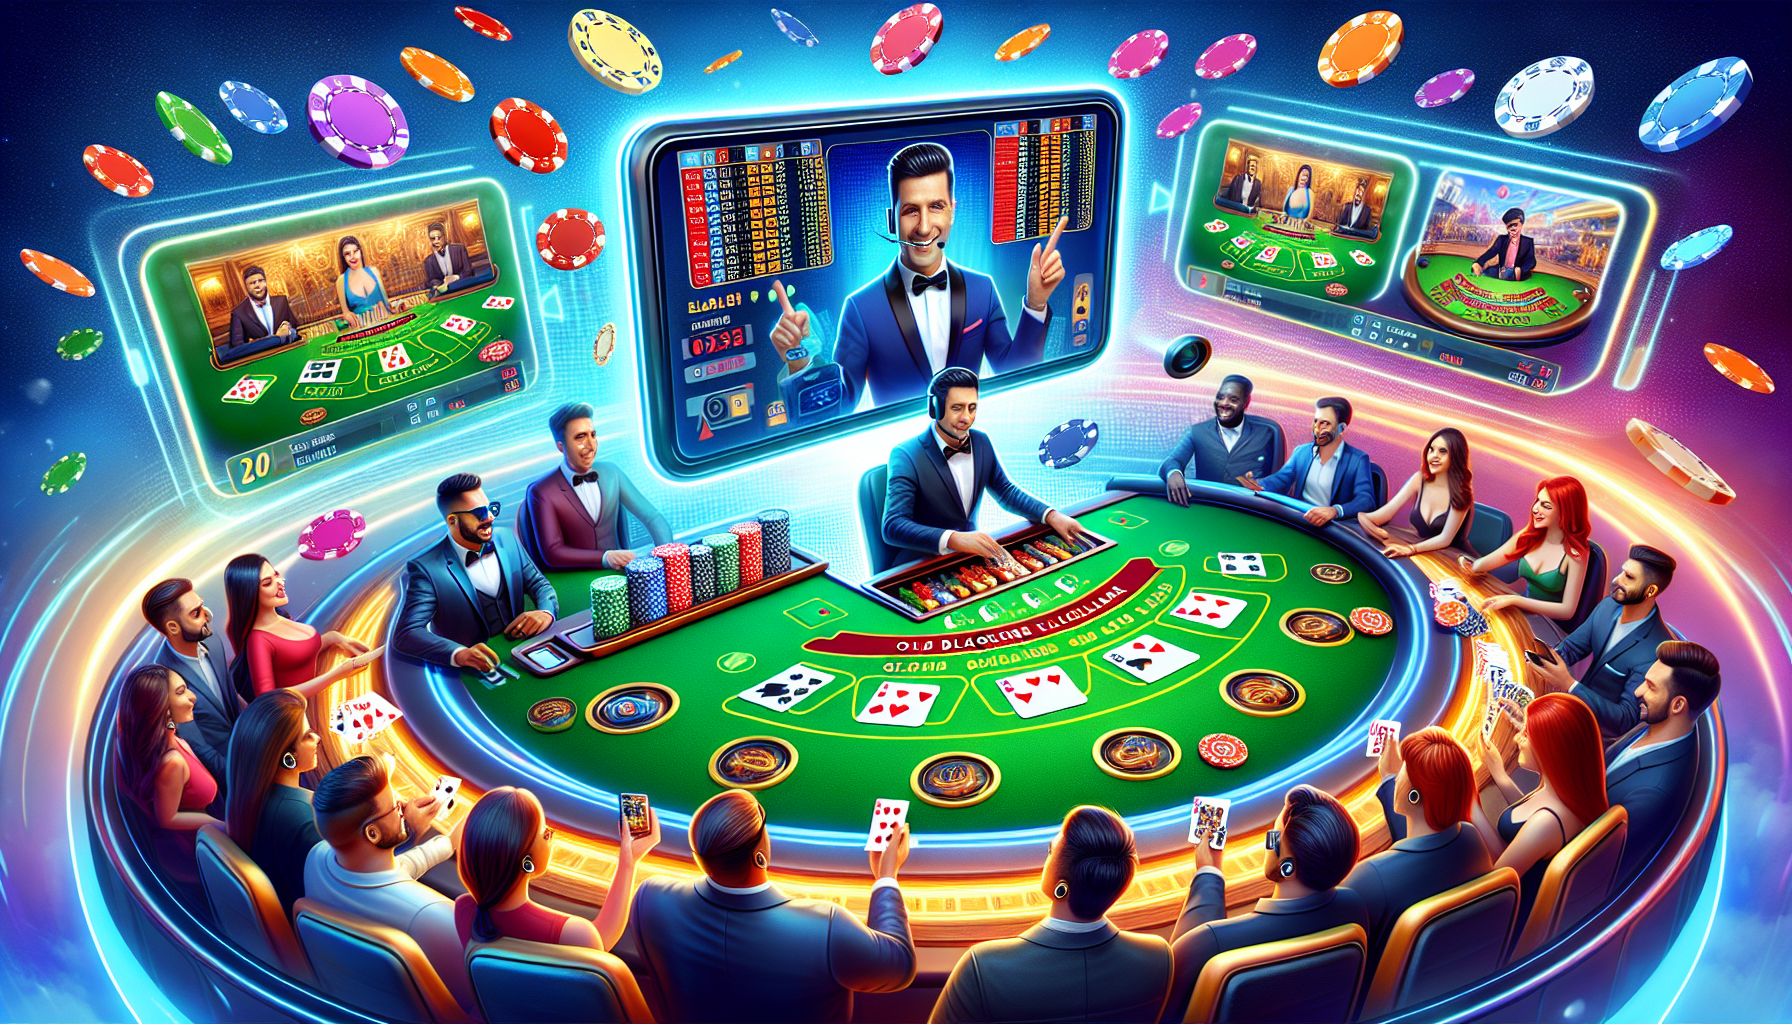 Creative depiction of online blackjack games